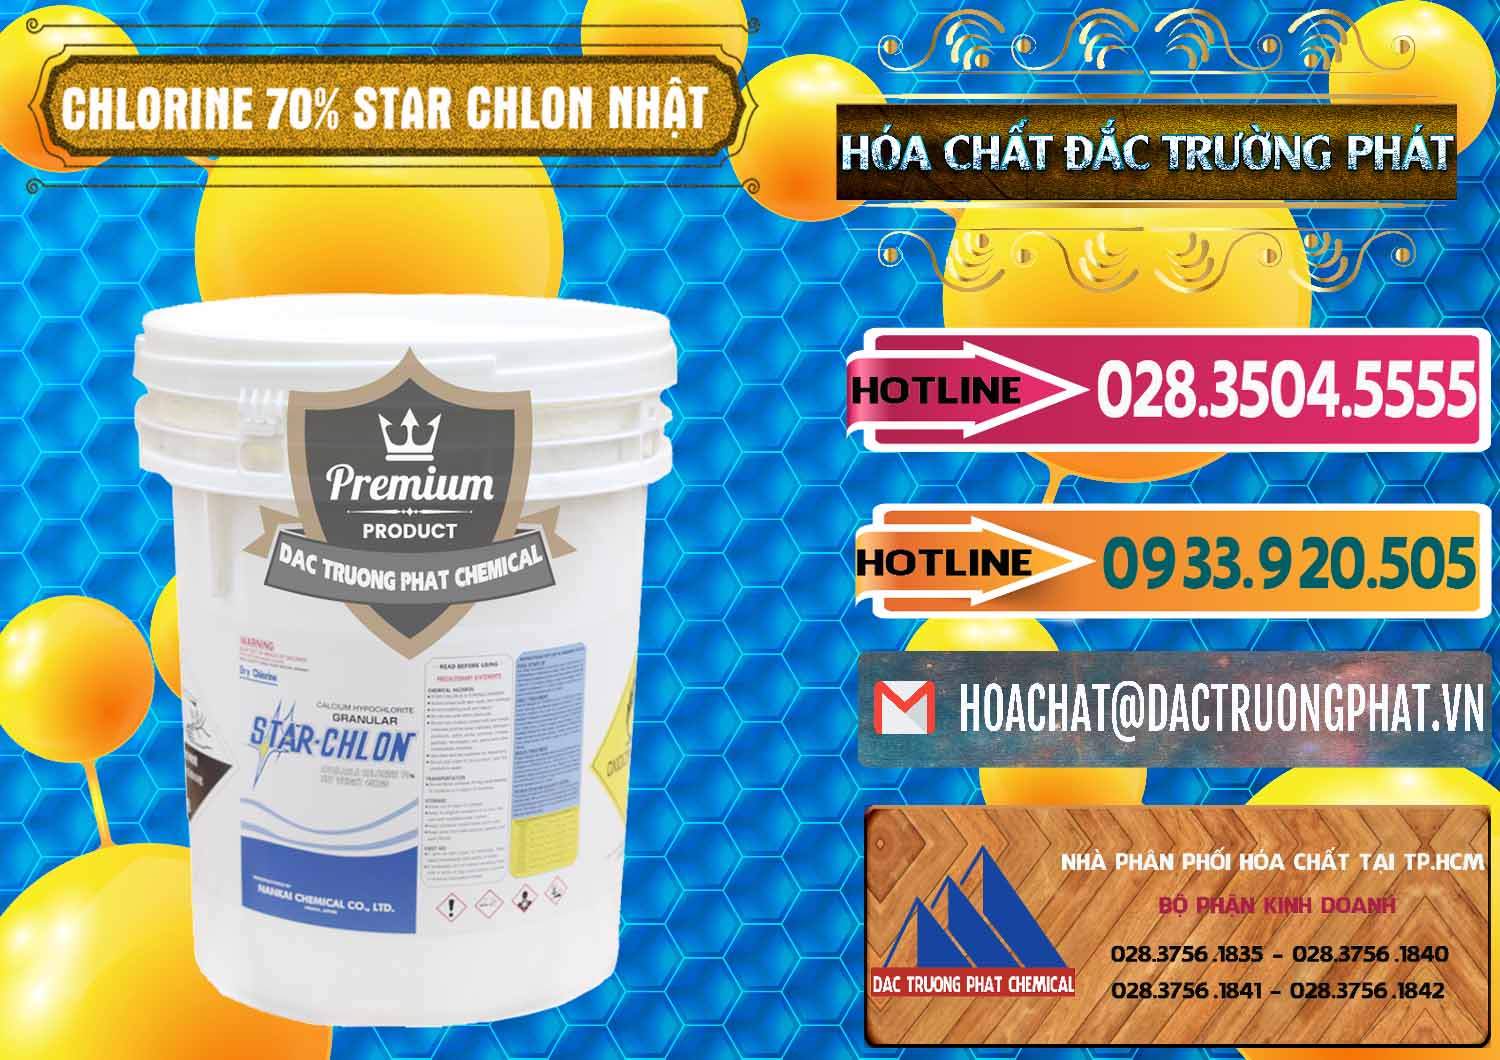 Chuyên cung ứng và bán Clorin – Chlorine 70% Star Chlon Nhật Bản Japan - 0243 - Công ty chuyên cung cấp - bán hóa chất tại TP.HCM - dactruongphat.vn